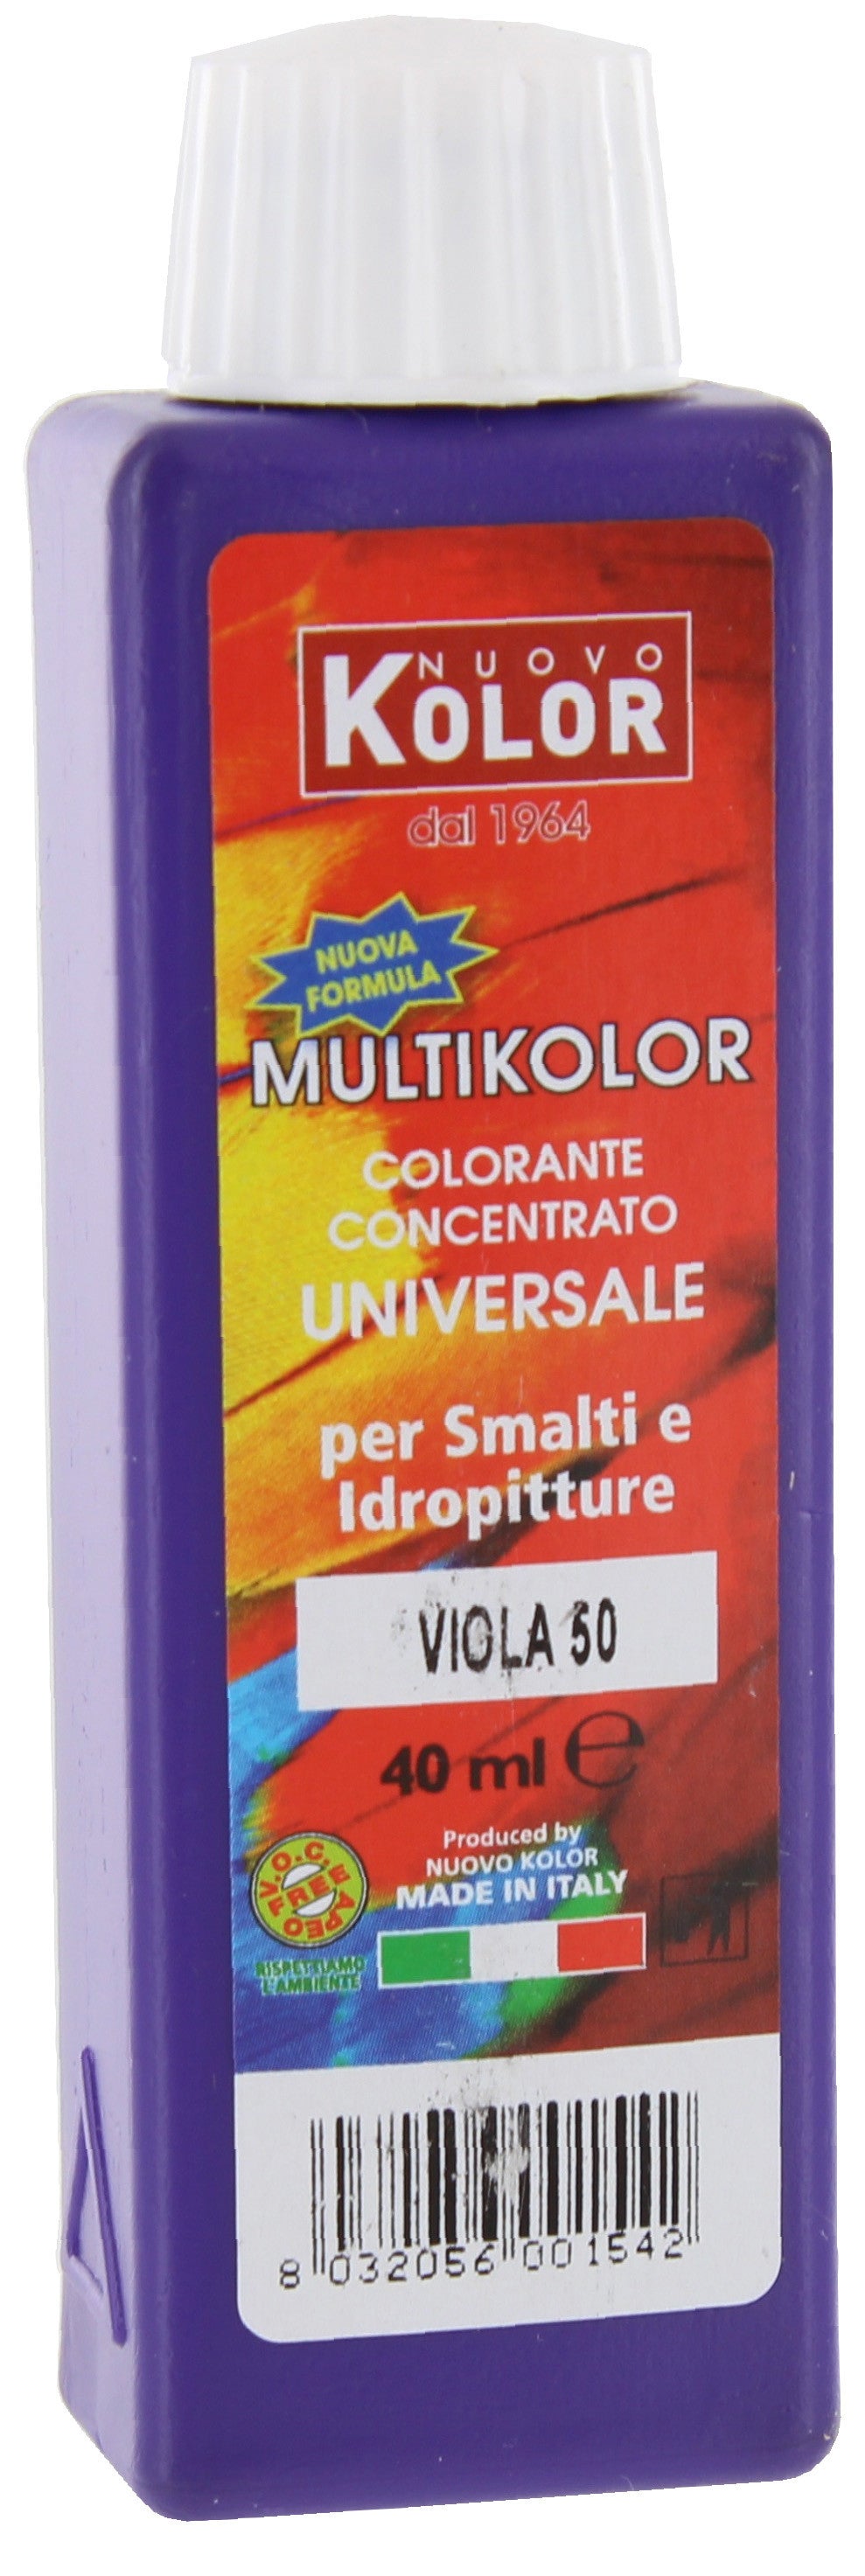 Colorante universale ml.40 viola         50rl